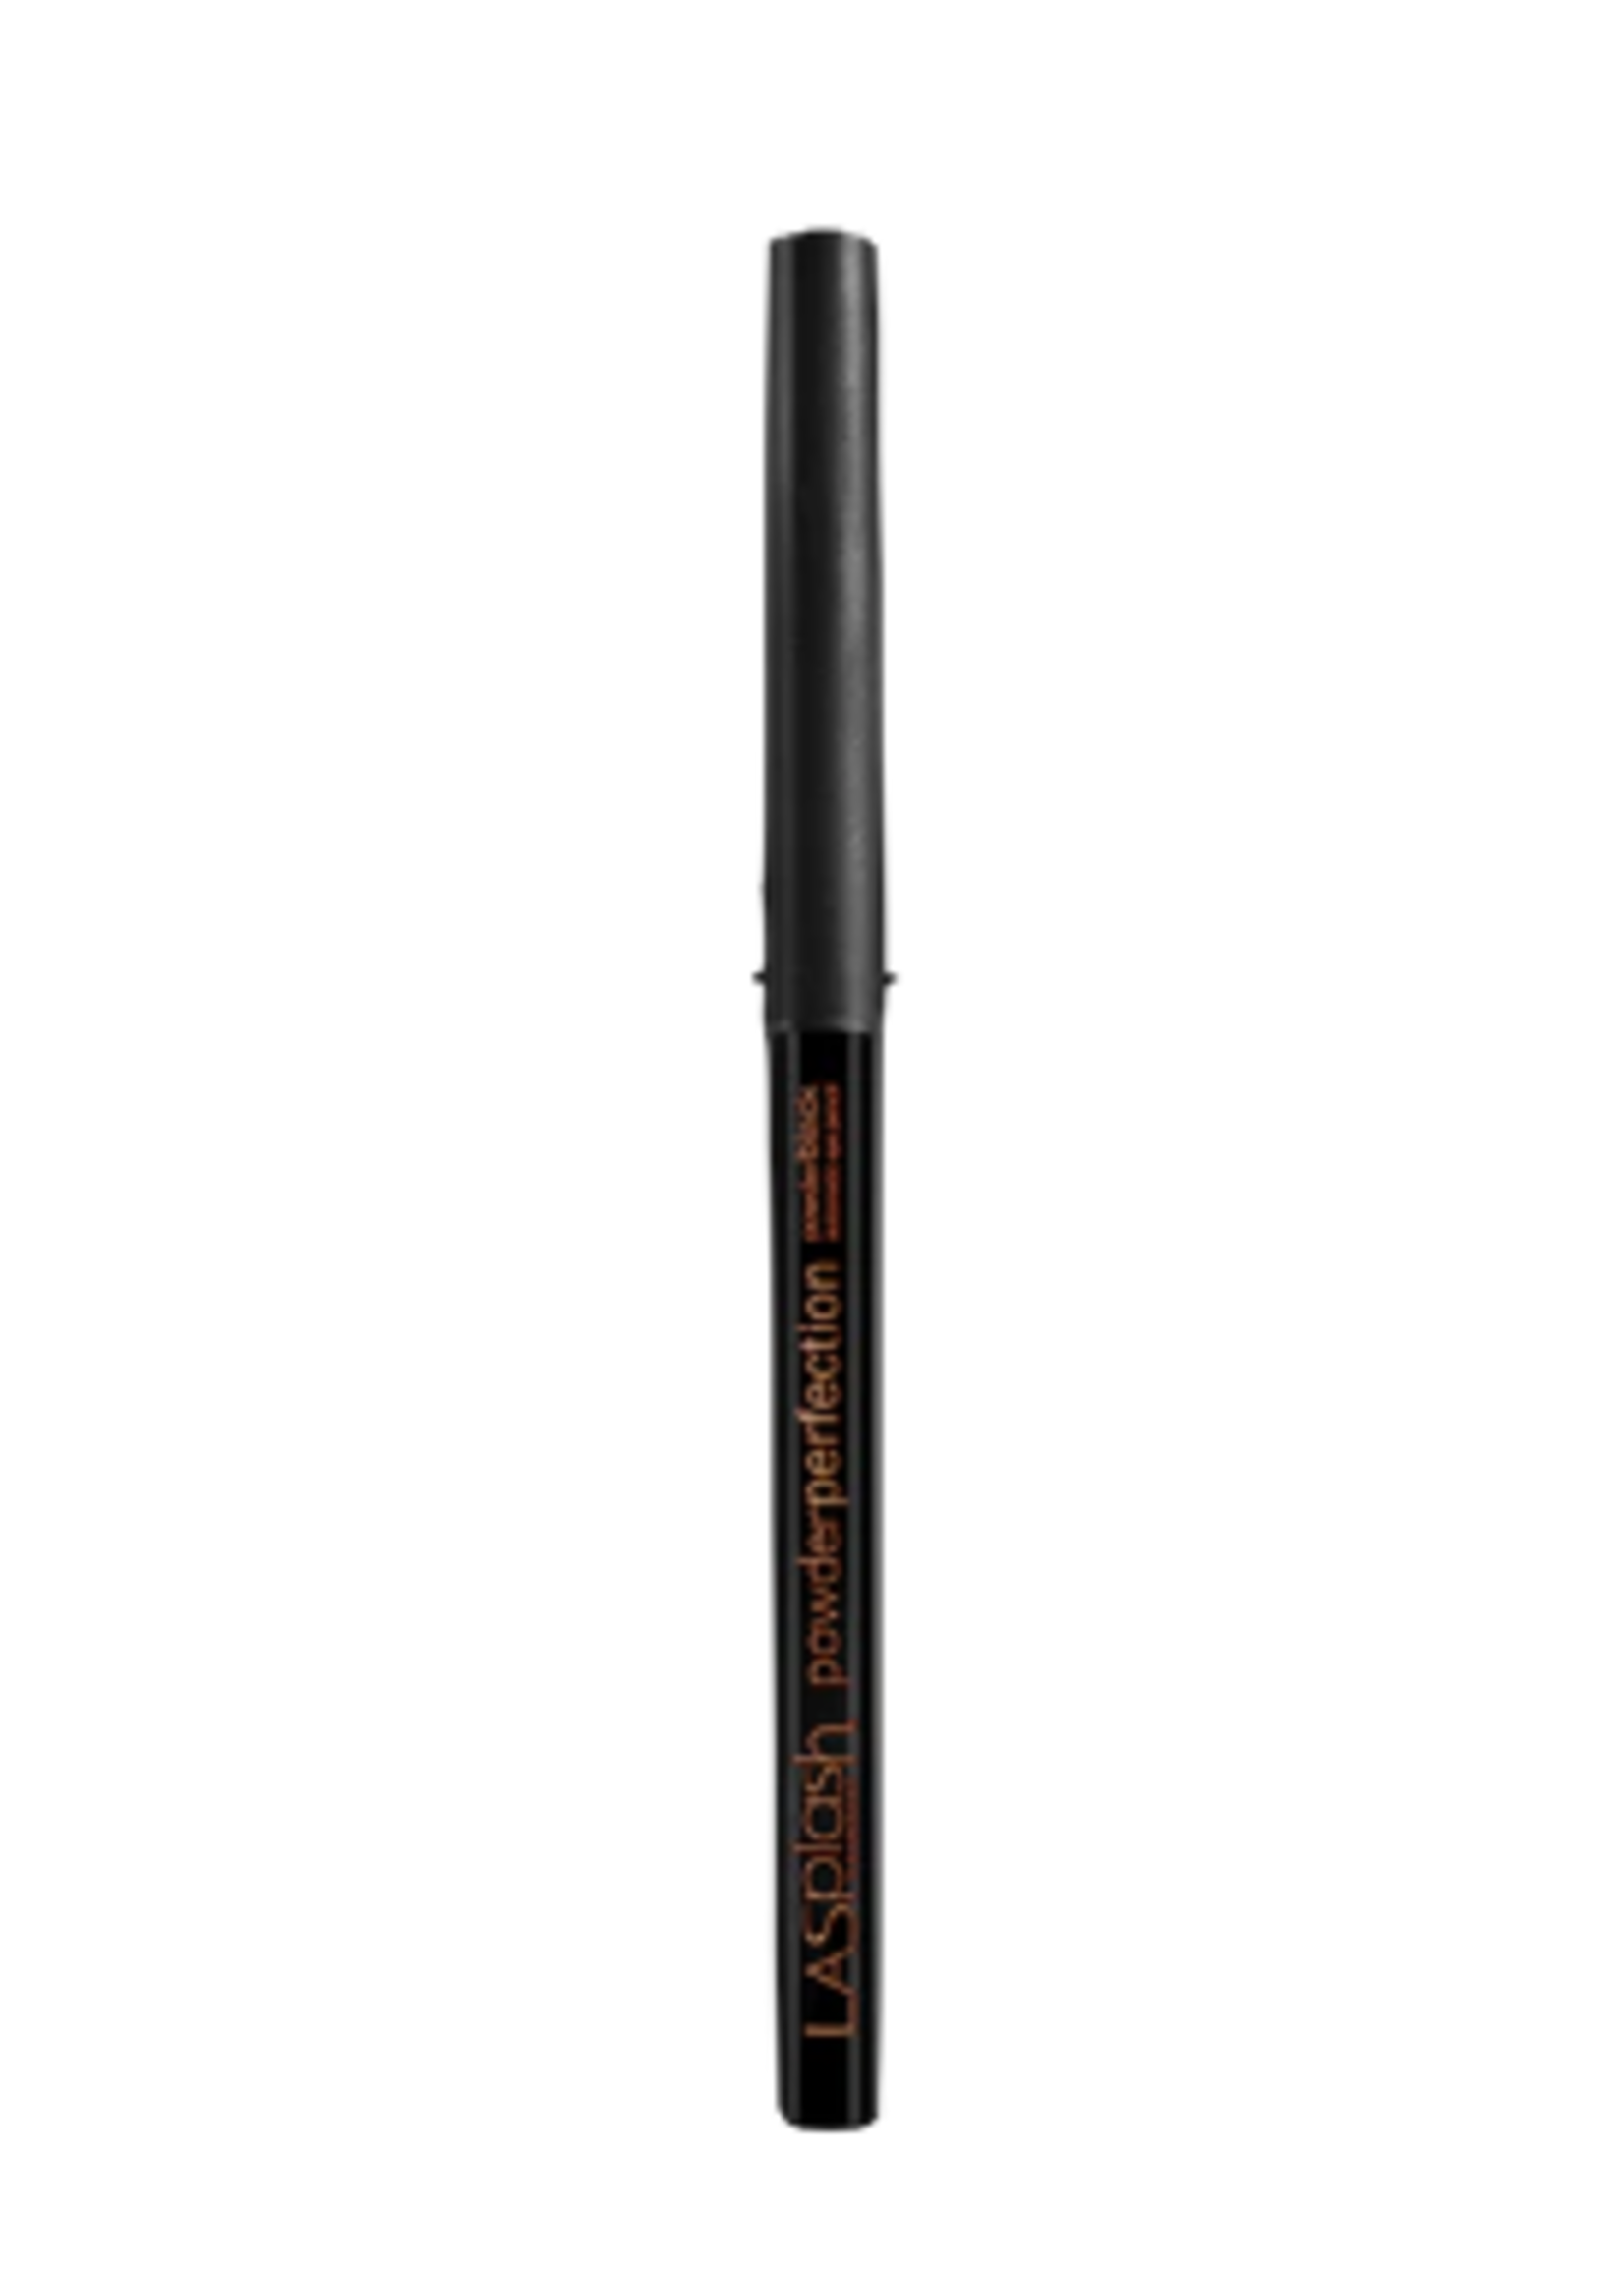 LA Splash Irresistible Smudge Proof Pencil, Black